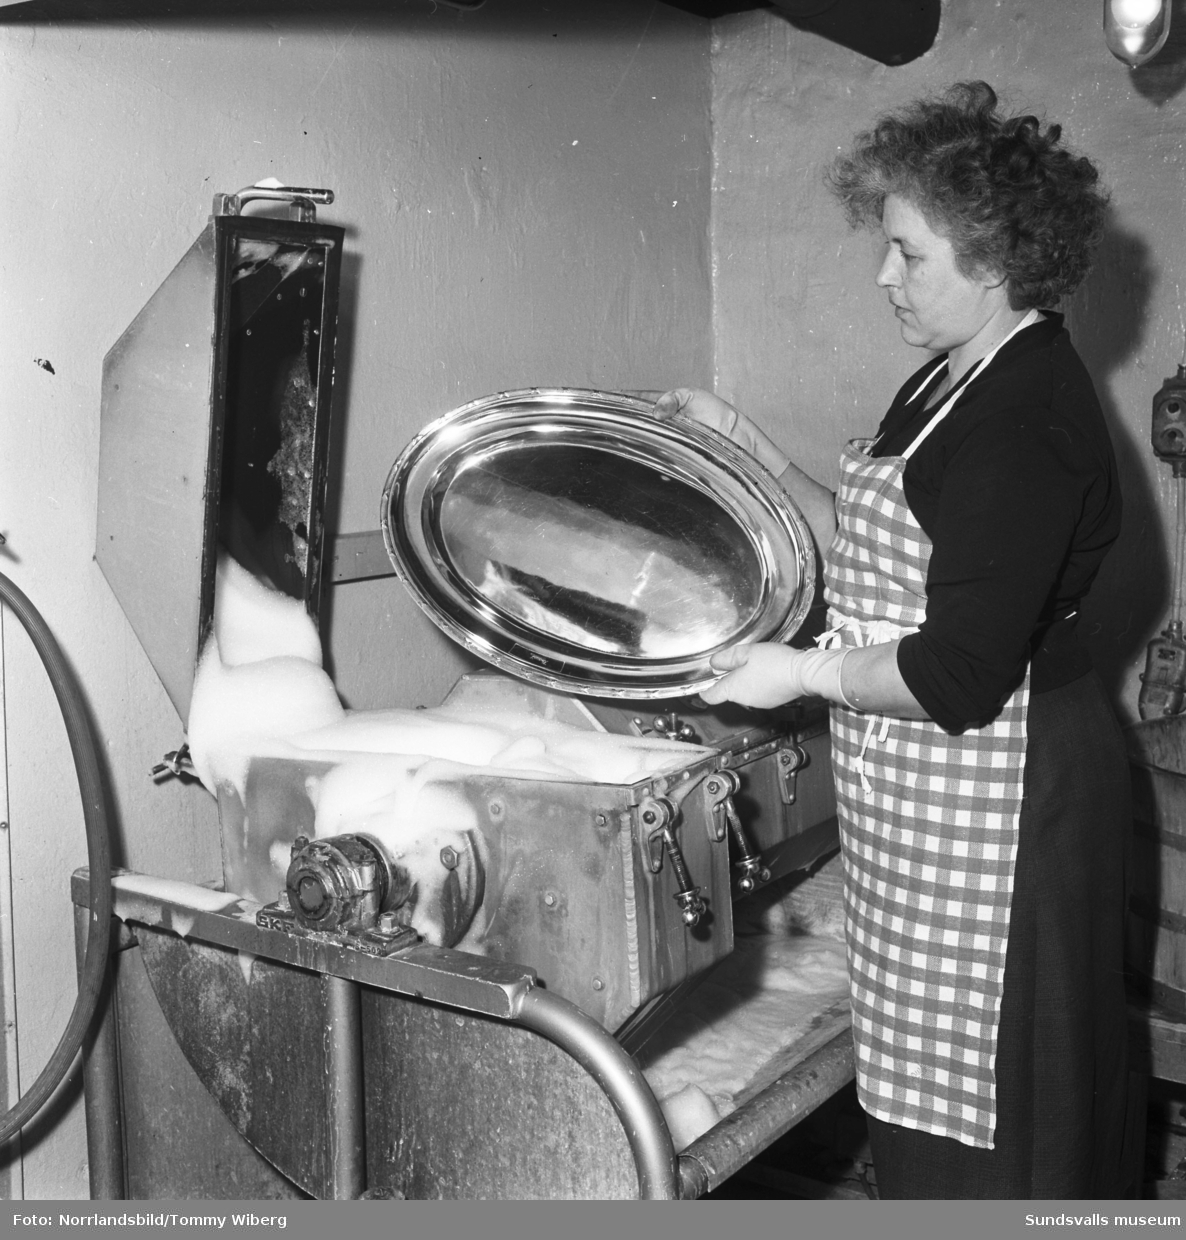 Hotell Knaust, bilder från verksamheten bakom kulisserna. Reportagebilder med personal som exempelvis diskar, tvättar, reparerar inventarier och maskiner.